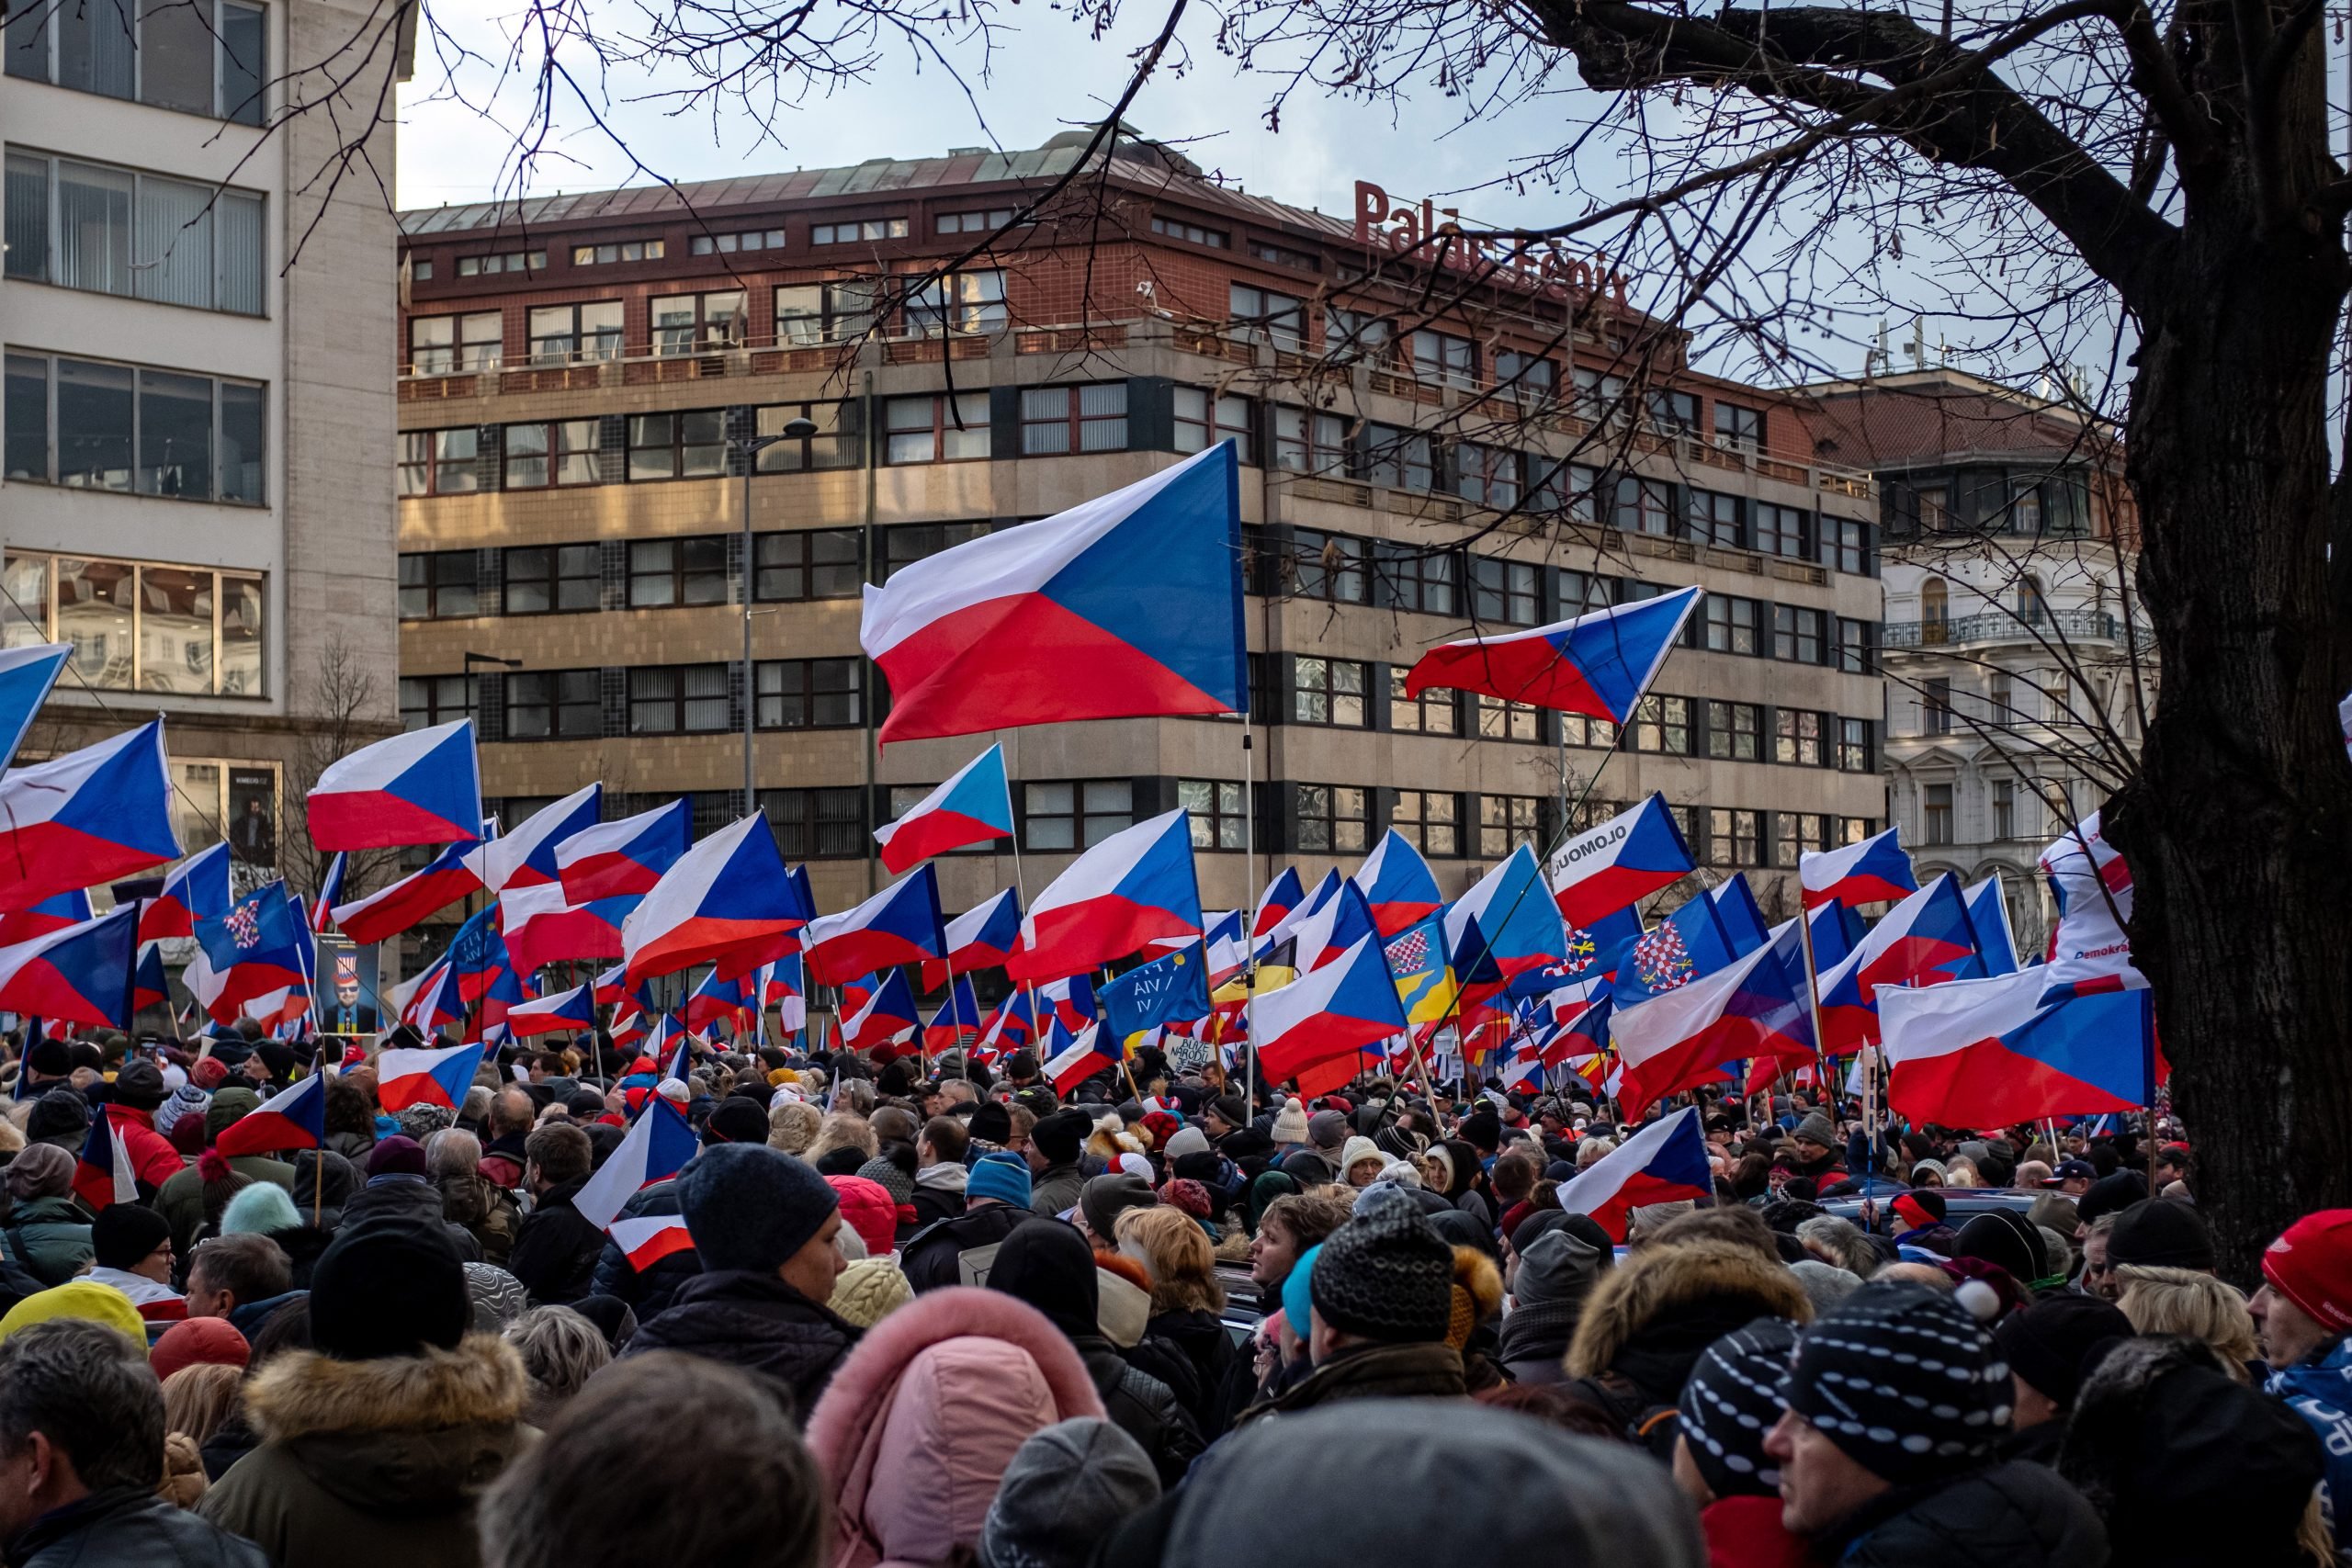 捷克布拉格数千人示威 不满高通胀导致贫穷